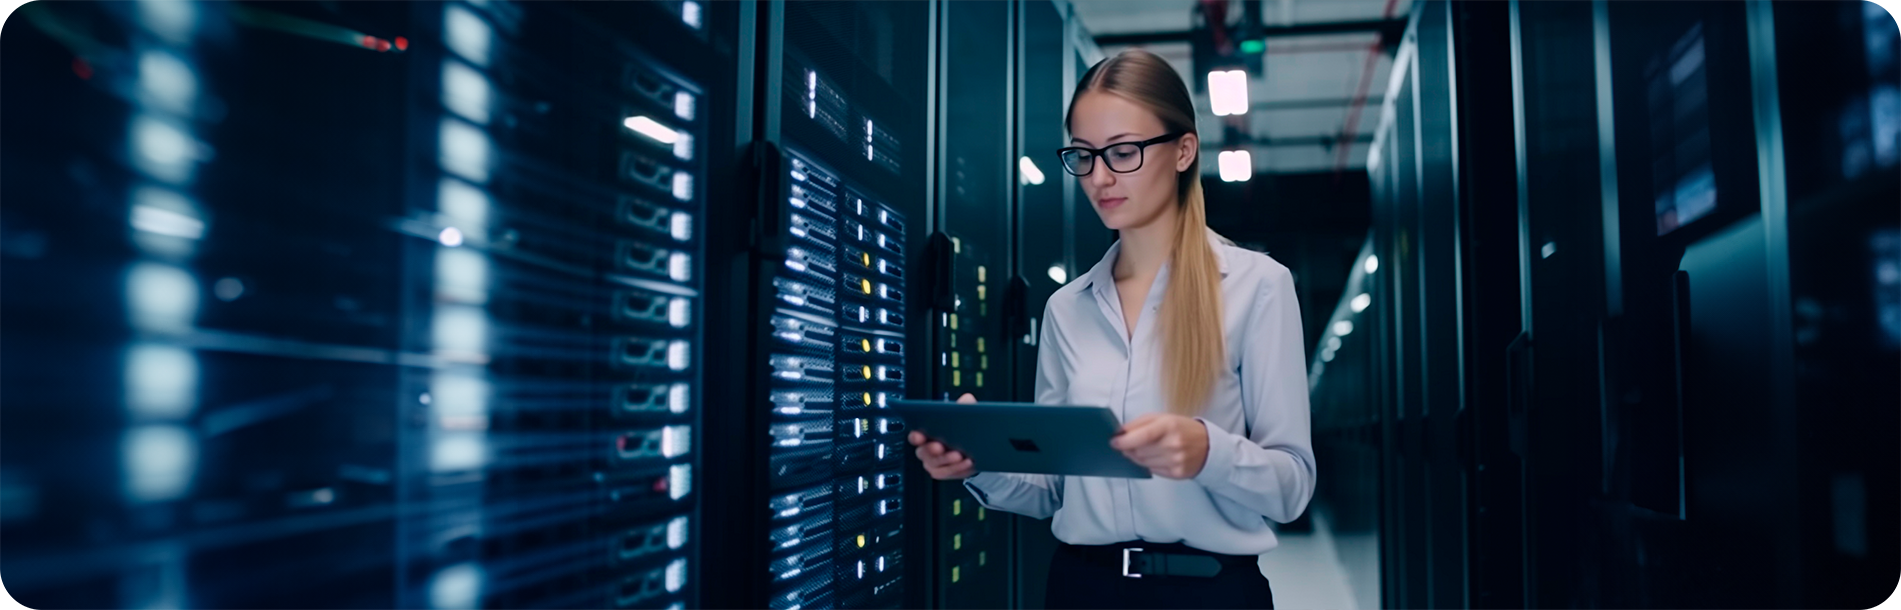 Fotografia de um servidor de banco de dados com uma mulher loira em destaque segurando um tablet